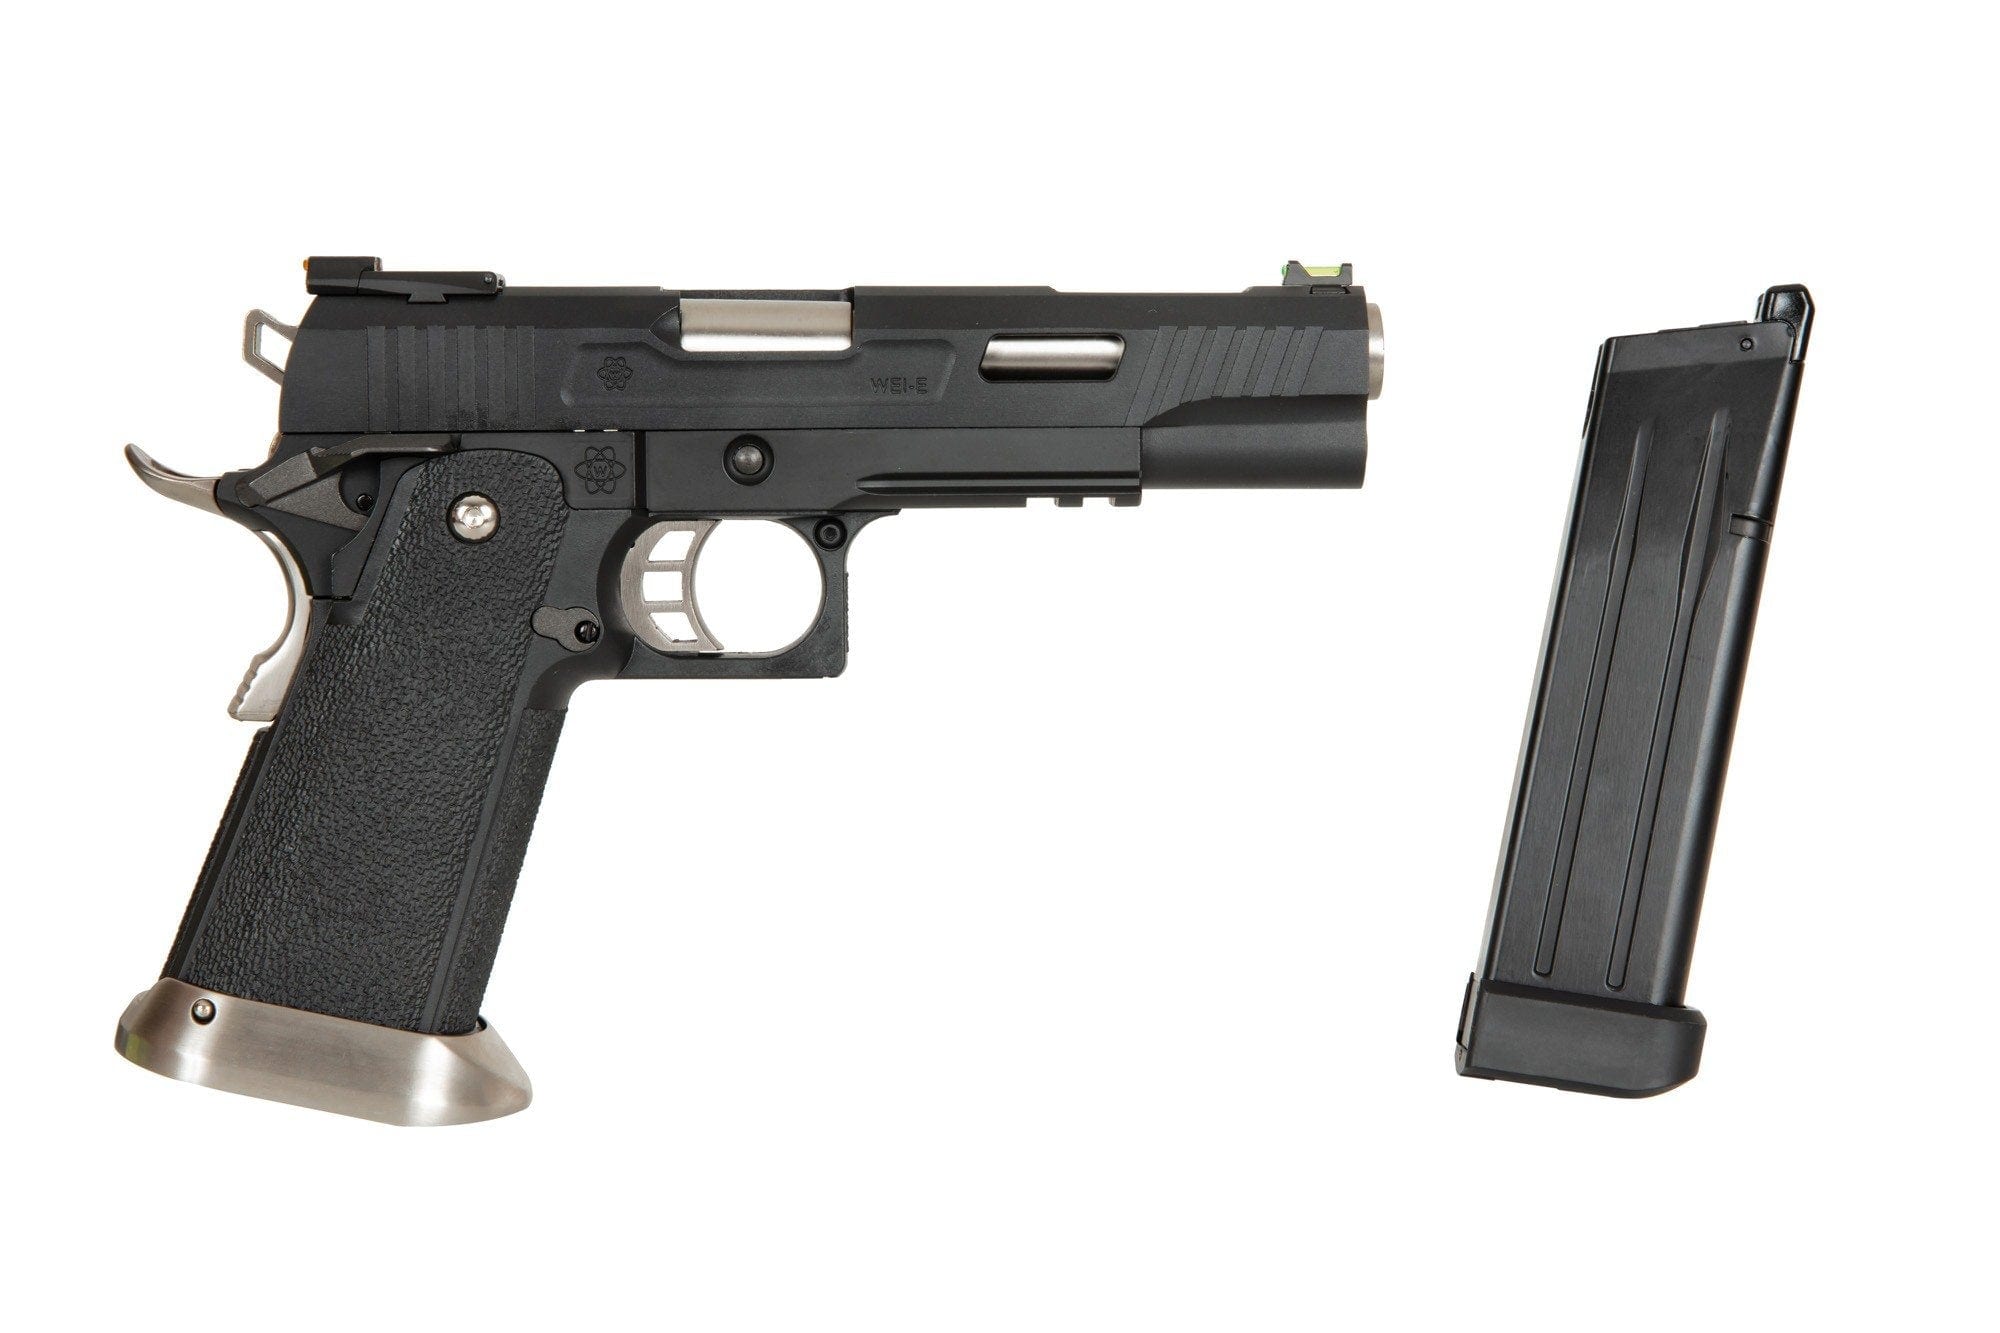 Pistola Hi-Capa 5.1 Force Maple Leaf - nera